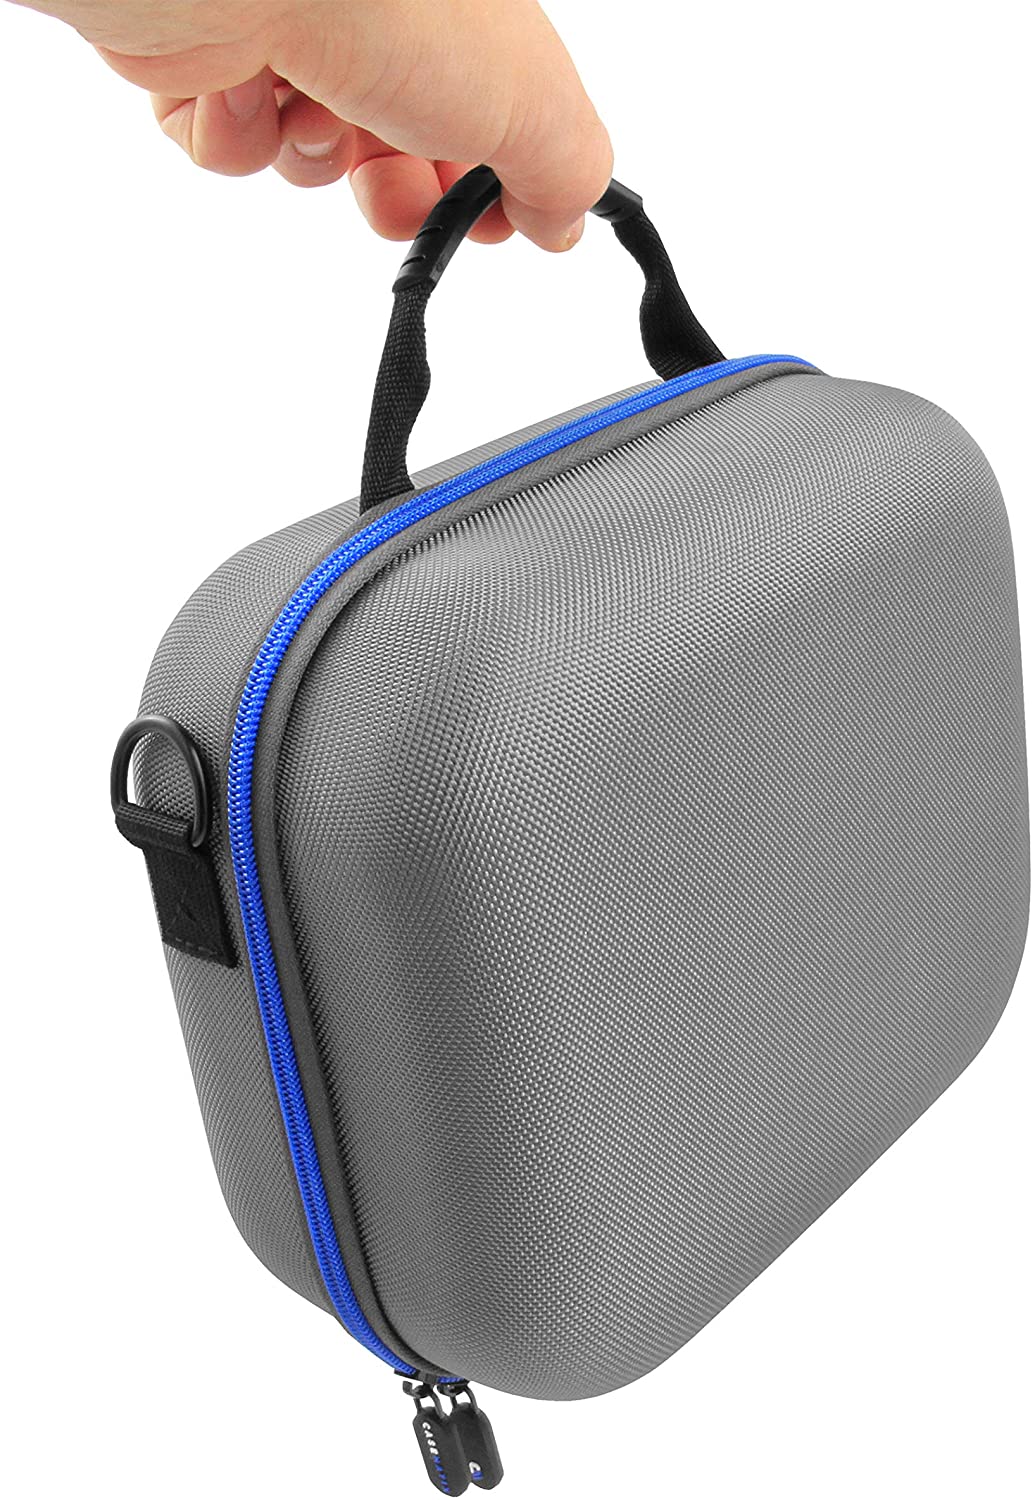 AirMini Premium Travel Bag